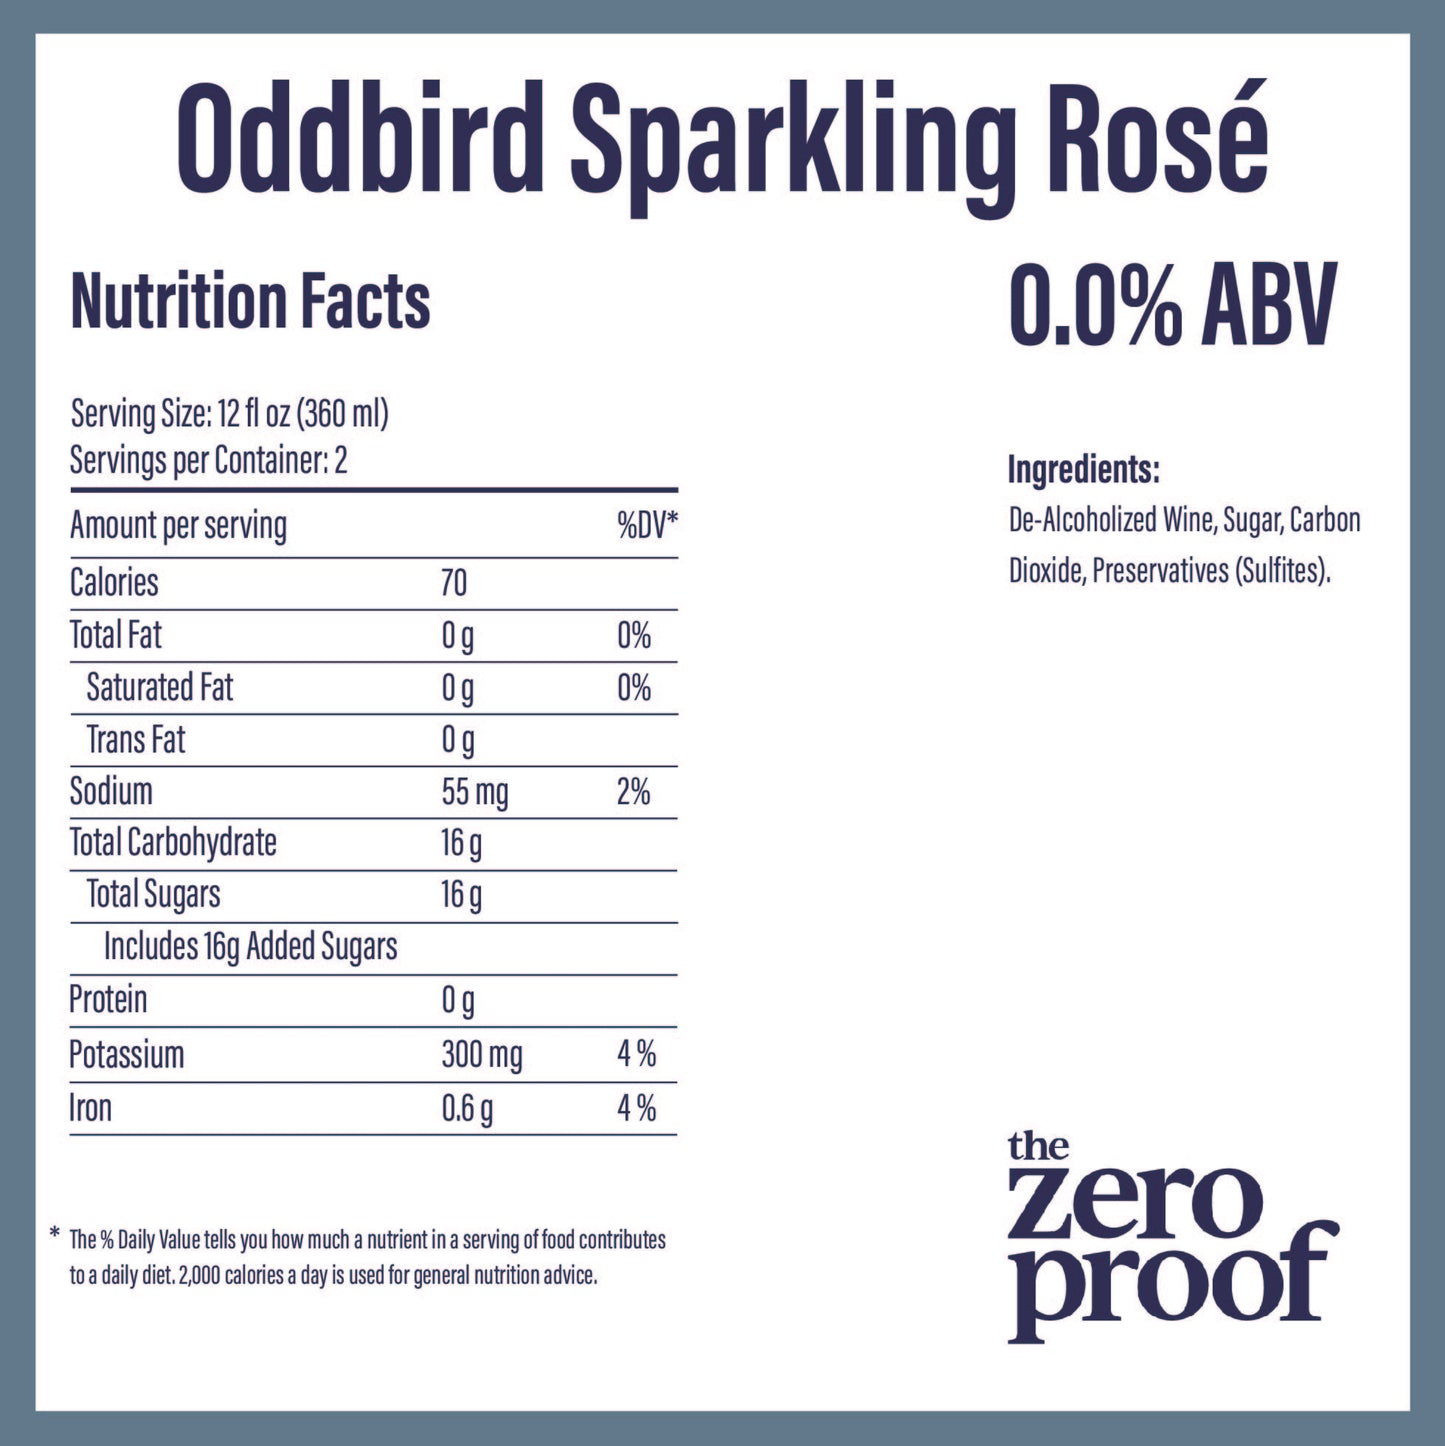 Oddbird Sparkling Rosé